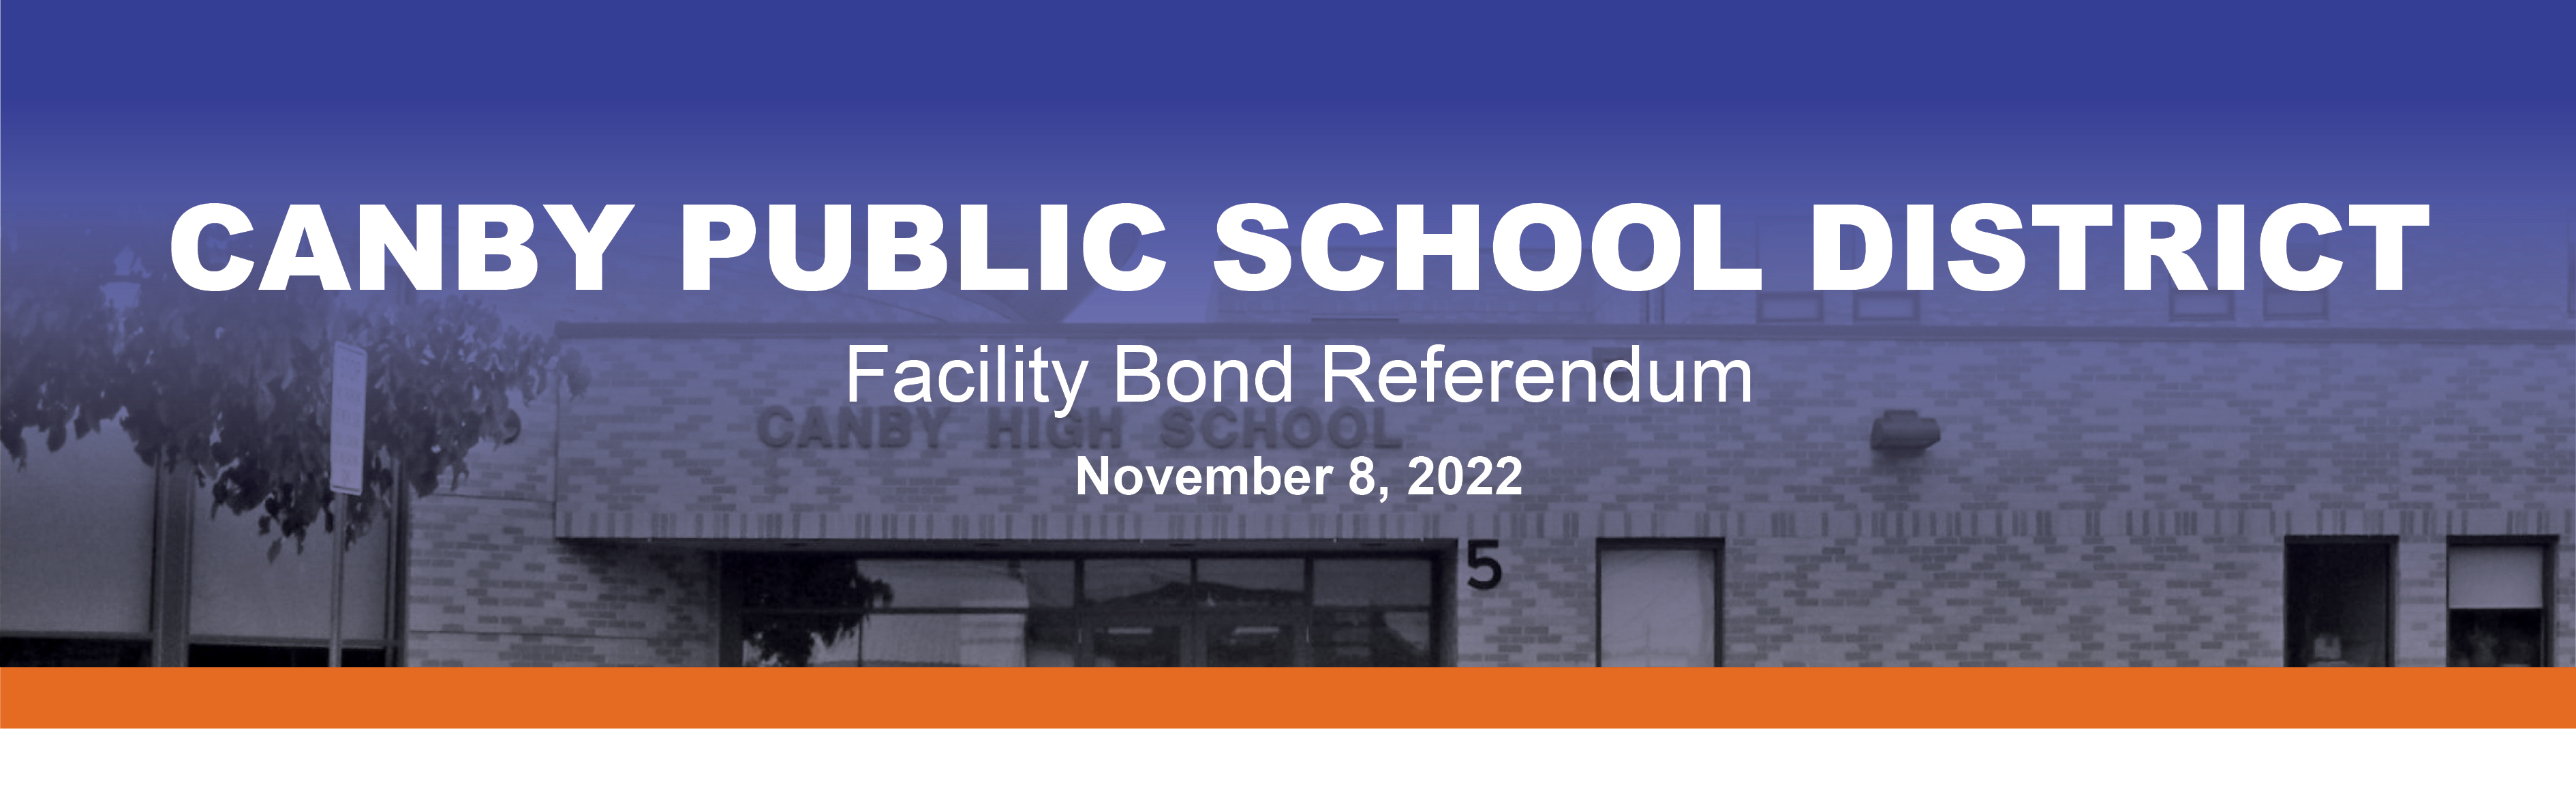 Facility Bond Referendum CANBY PUBLIC SCHOOL DISTRICT